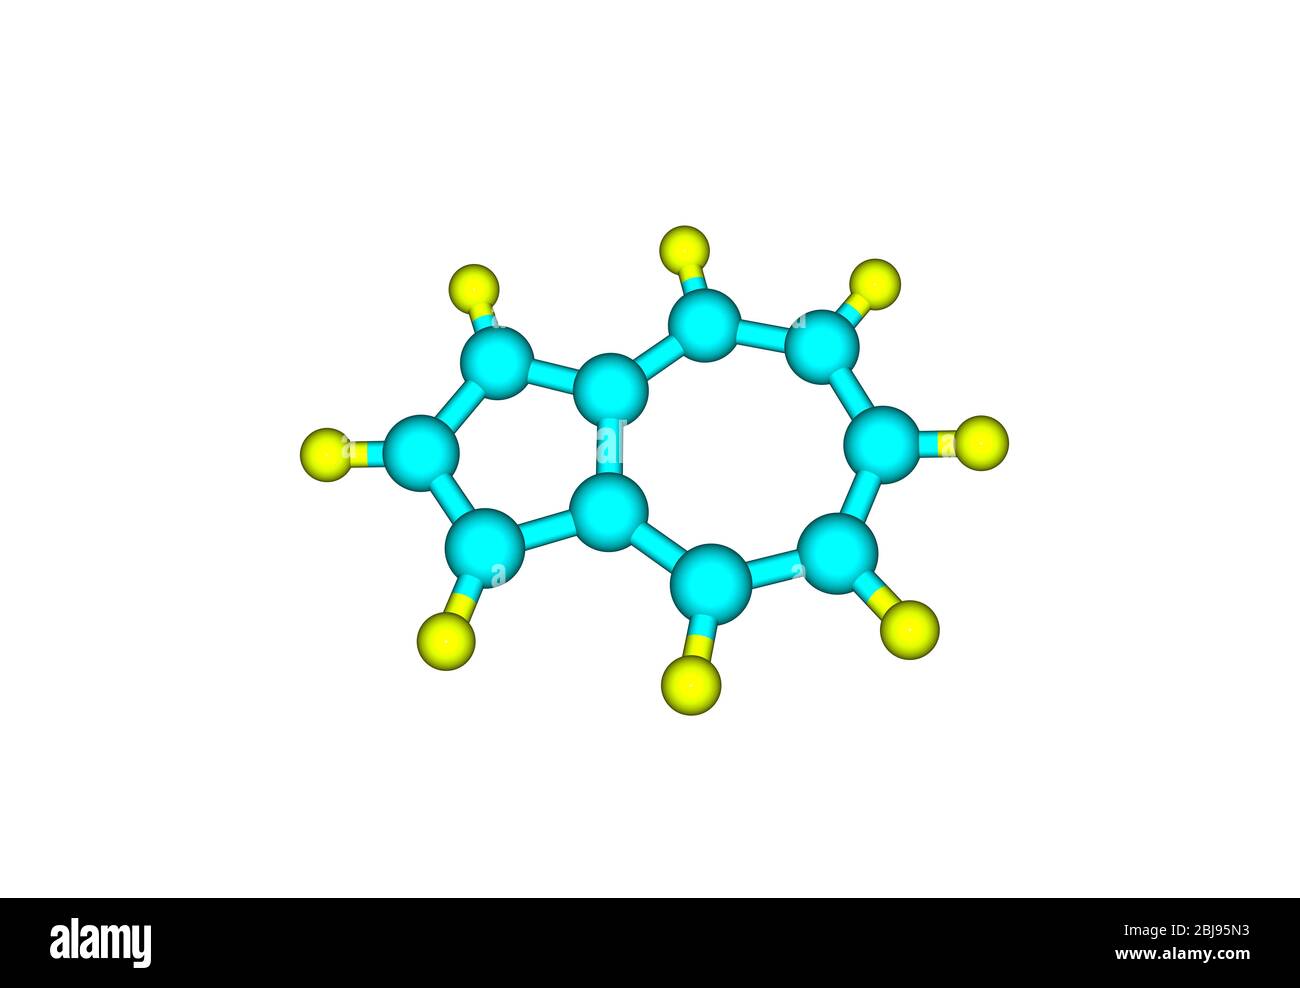 Azulene ist eine organische Verbindung und ein Isomer von Naphthalin. Während Naphthalin farblos ist, ist Azulene dunkelblau. Stockfoto